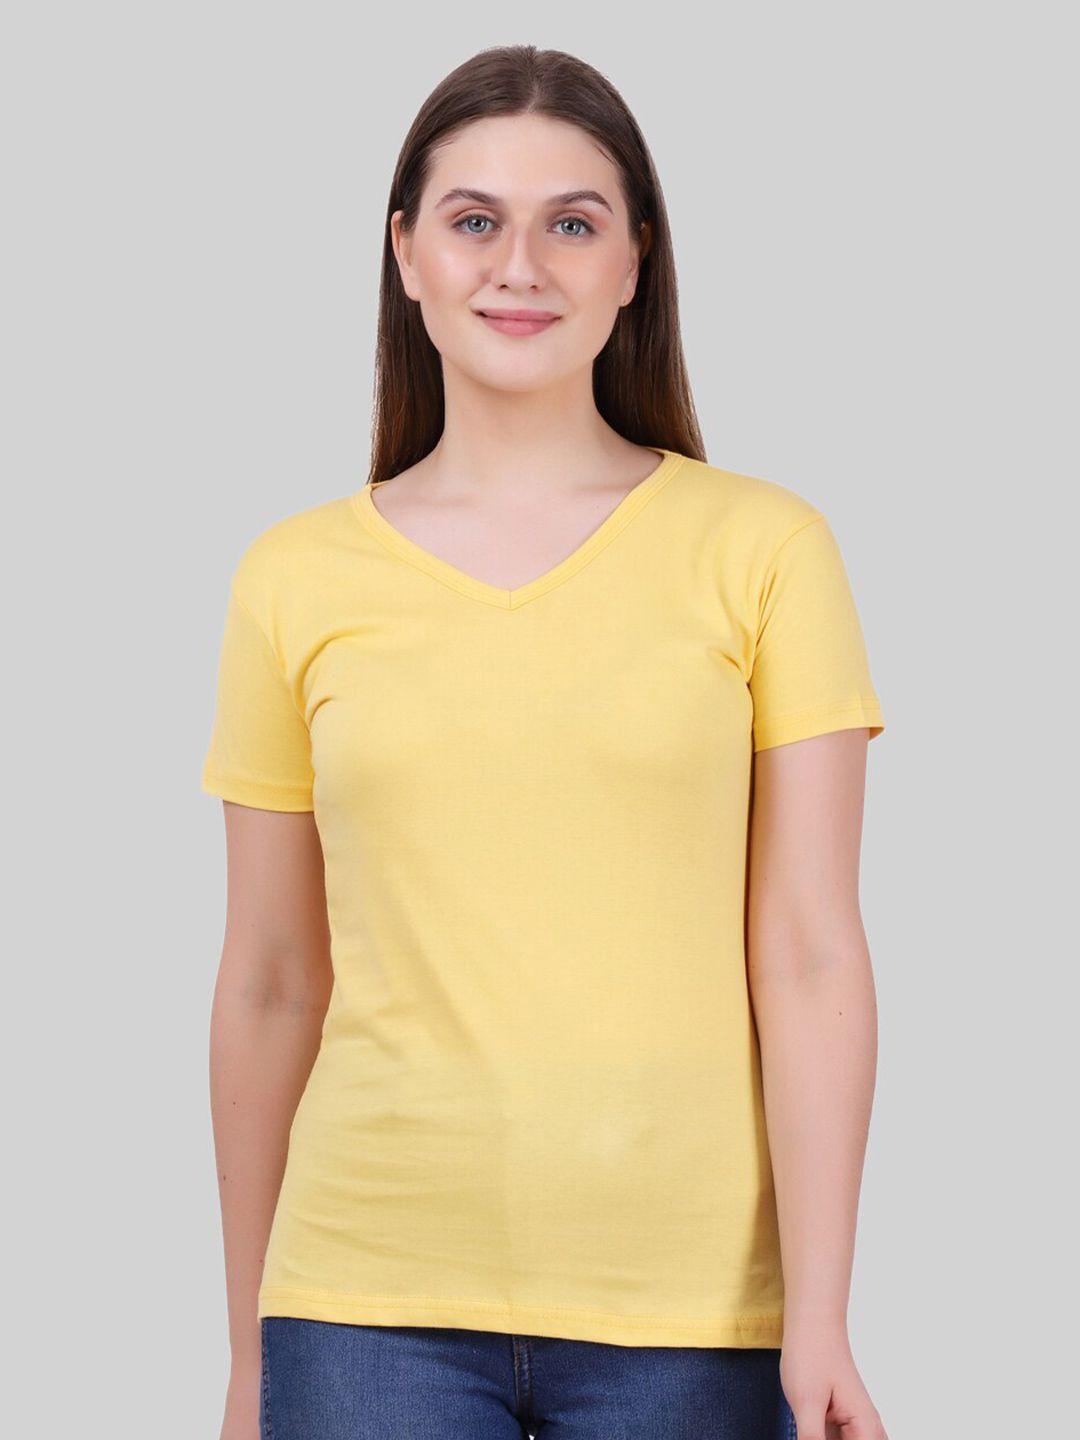 fleximaa-women-yellow-v-neck-t-shirt